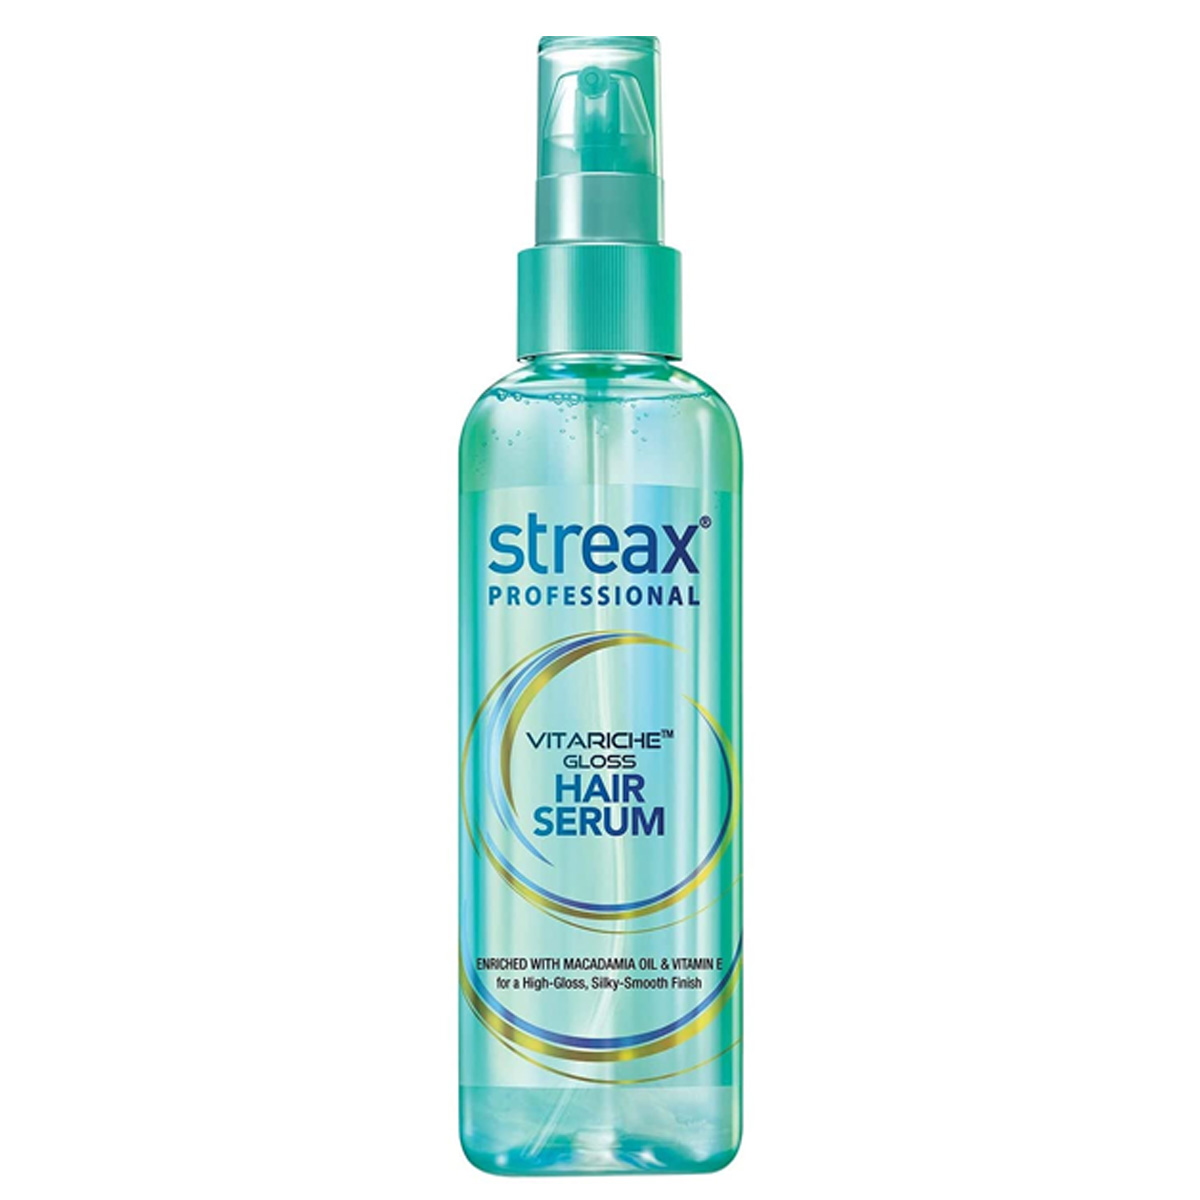 Streax Professional Vitariche Gloss Hair Serum, 45ml